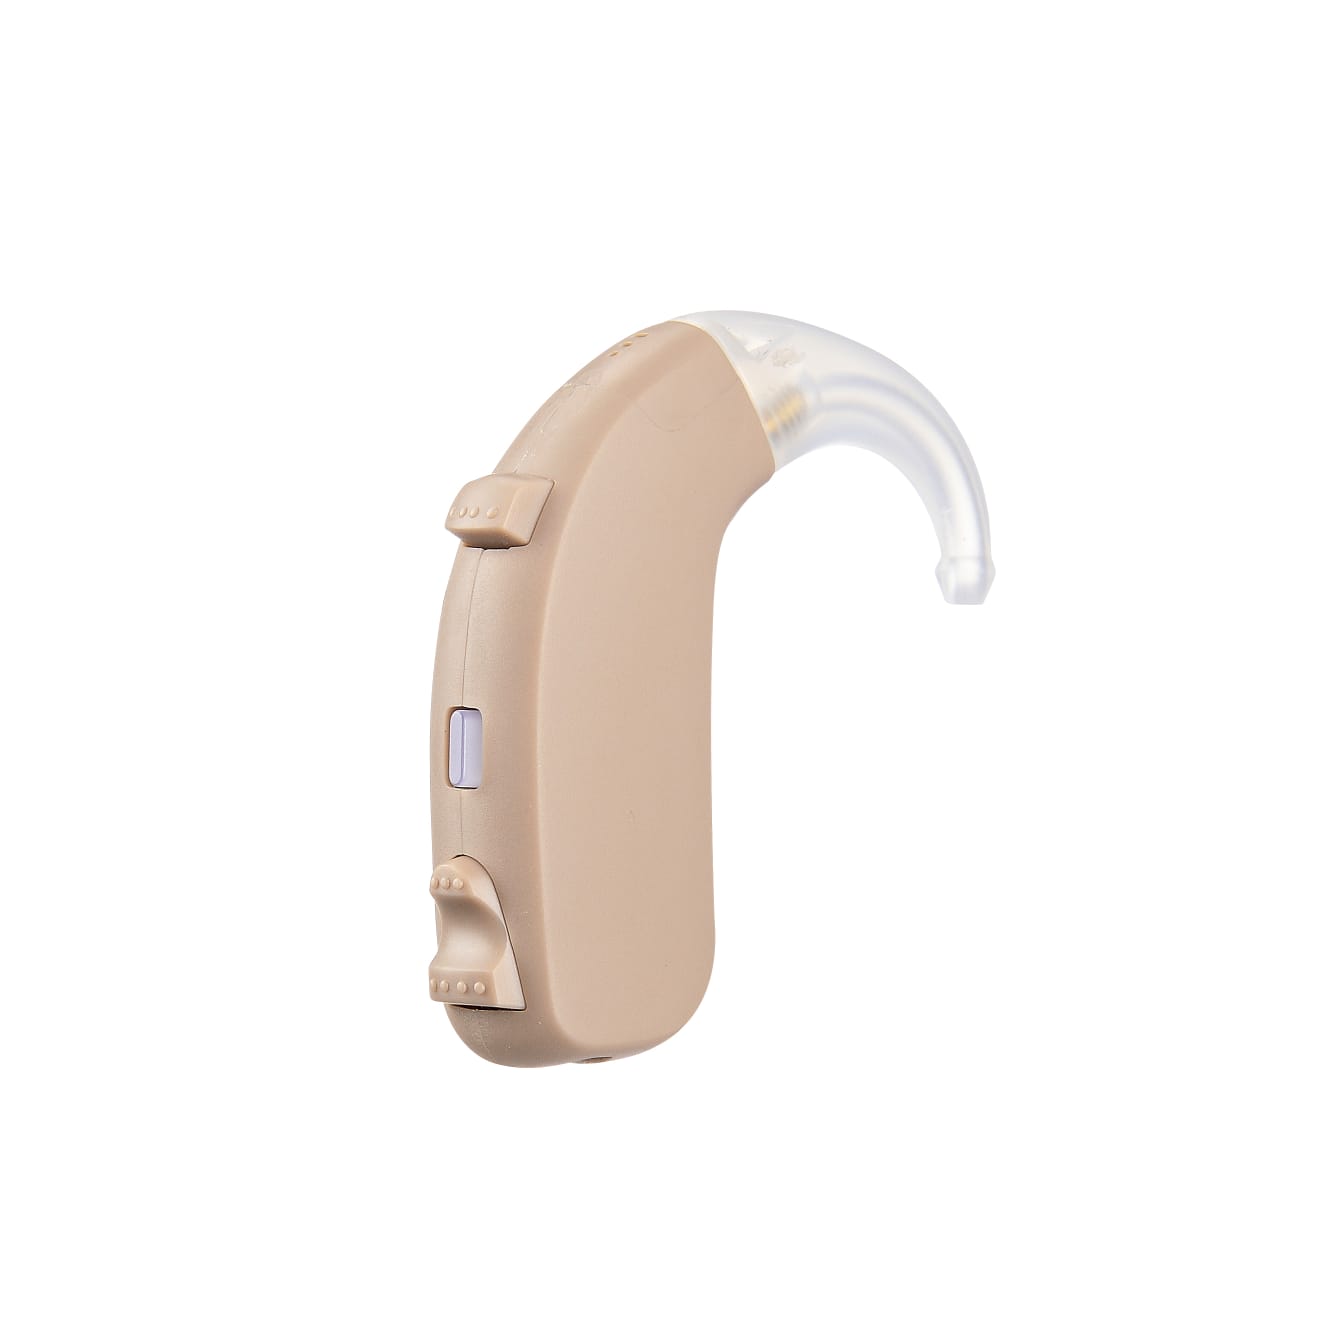 eEAR® Paire de BTE-26 Peak Gain 65db Enhanced Premium Derrière l'oreille Aide auditive numérique rechargeable BTE Conçue pour les pertes auditives sévères Conçue et fabriquée aux États-Unis Vendue à plus de 20 000 dans le monde